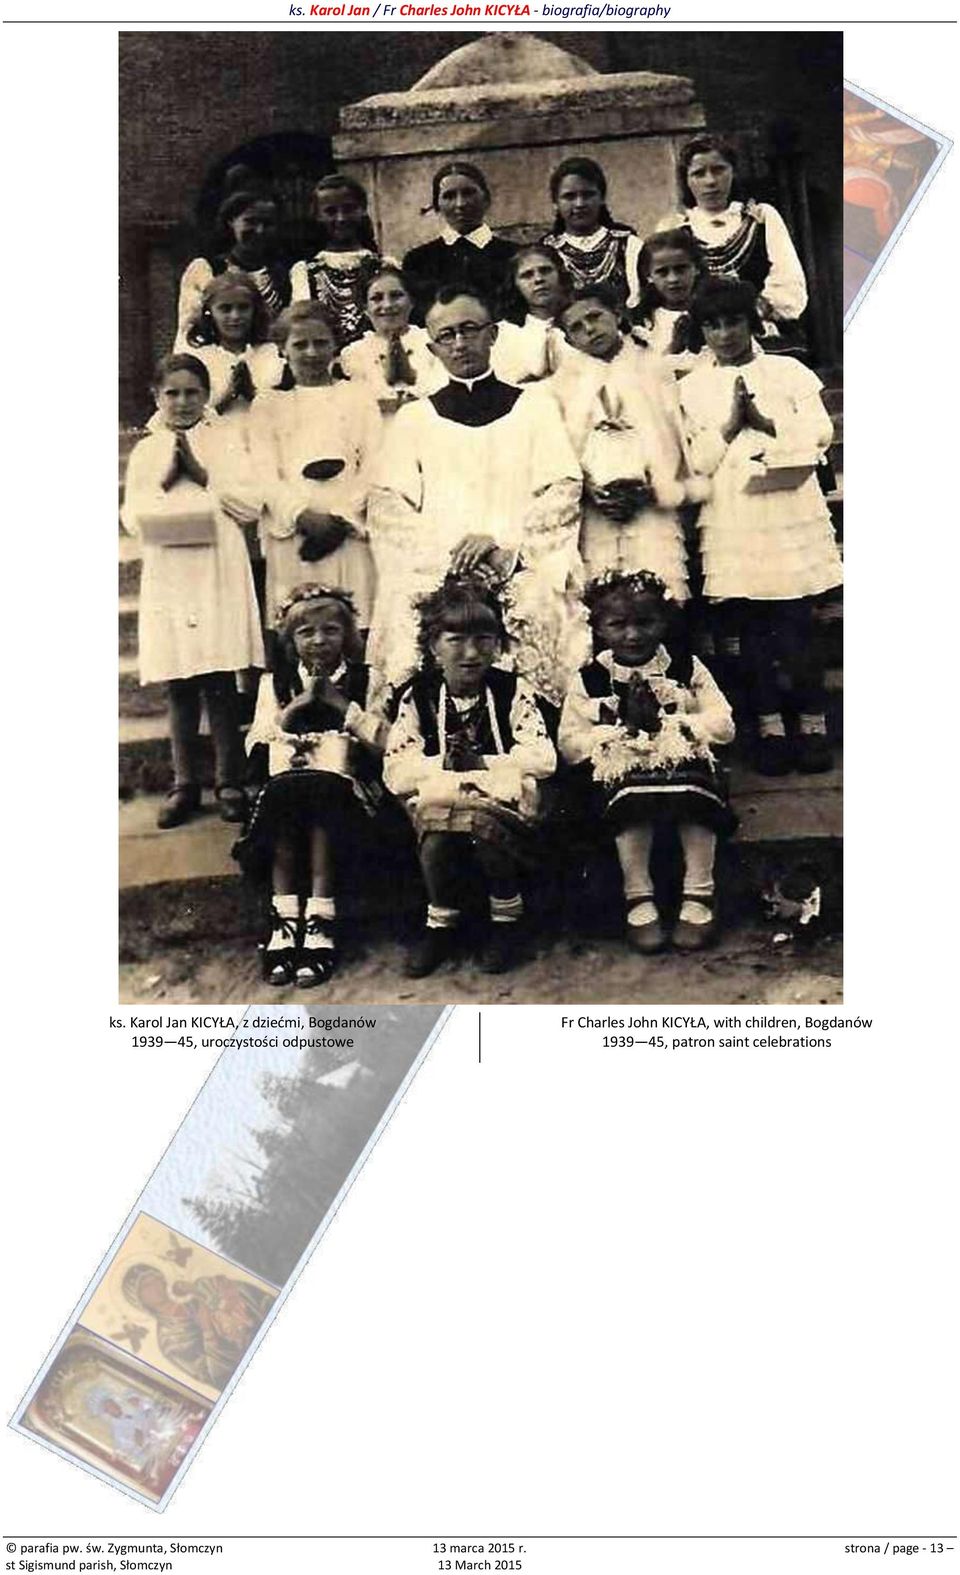 children, Bogdanów 1939 45, patron saint celebrations